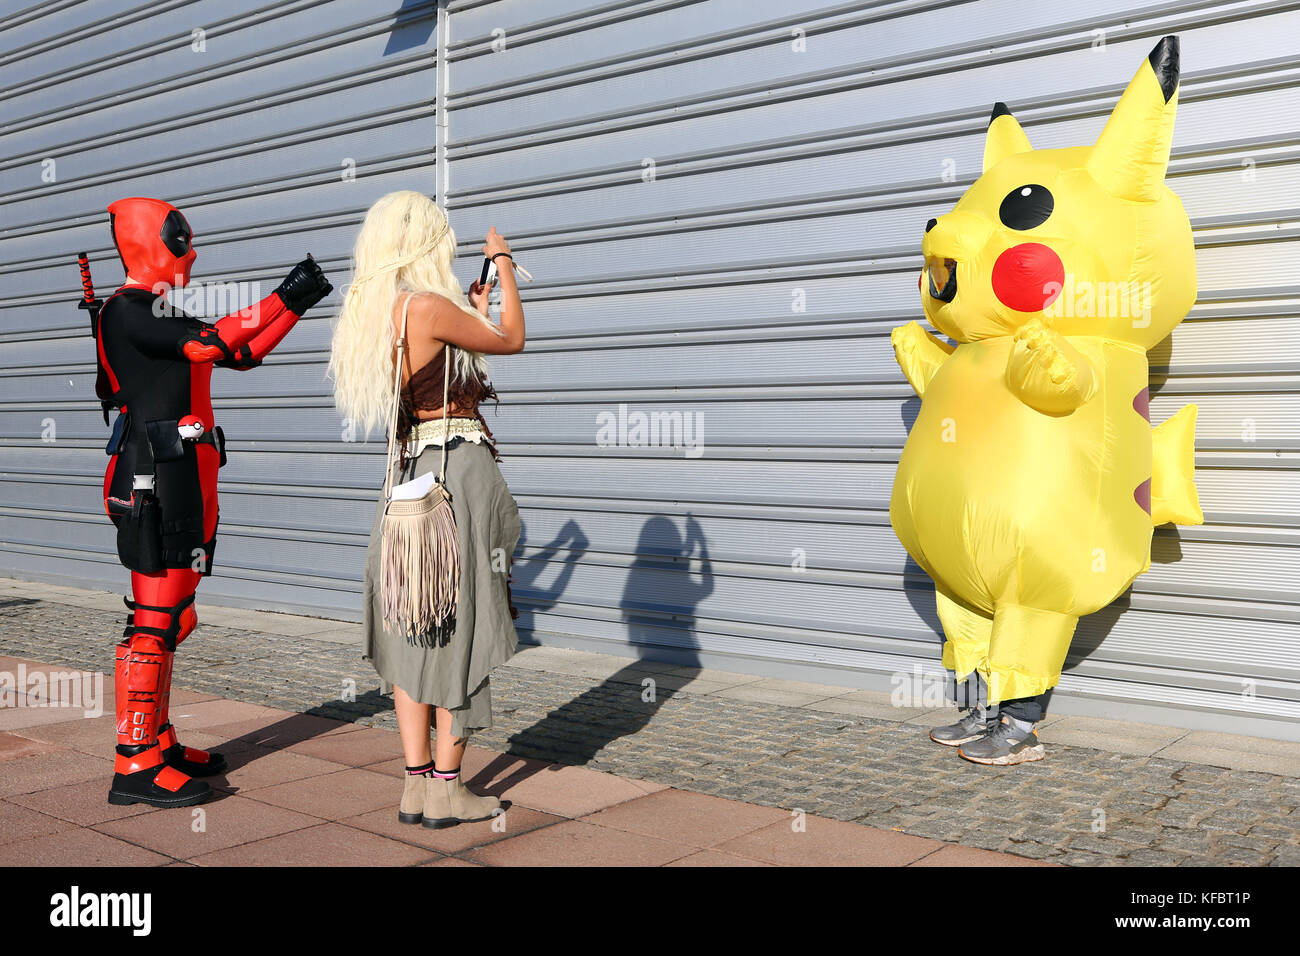 Londres, Royaume-Uni. 27 oct, 2017. participants habillés comme pikachu, deadpool et Daenerys Targaryen dans Game of thrones arrive à mcm london comic con qui aura lieu au crédit d'excel : Paul Brown/Alamy live news Banque D'Images